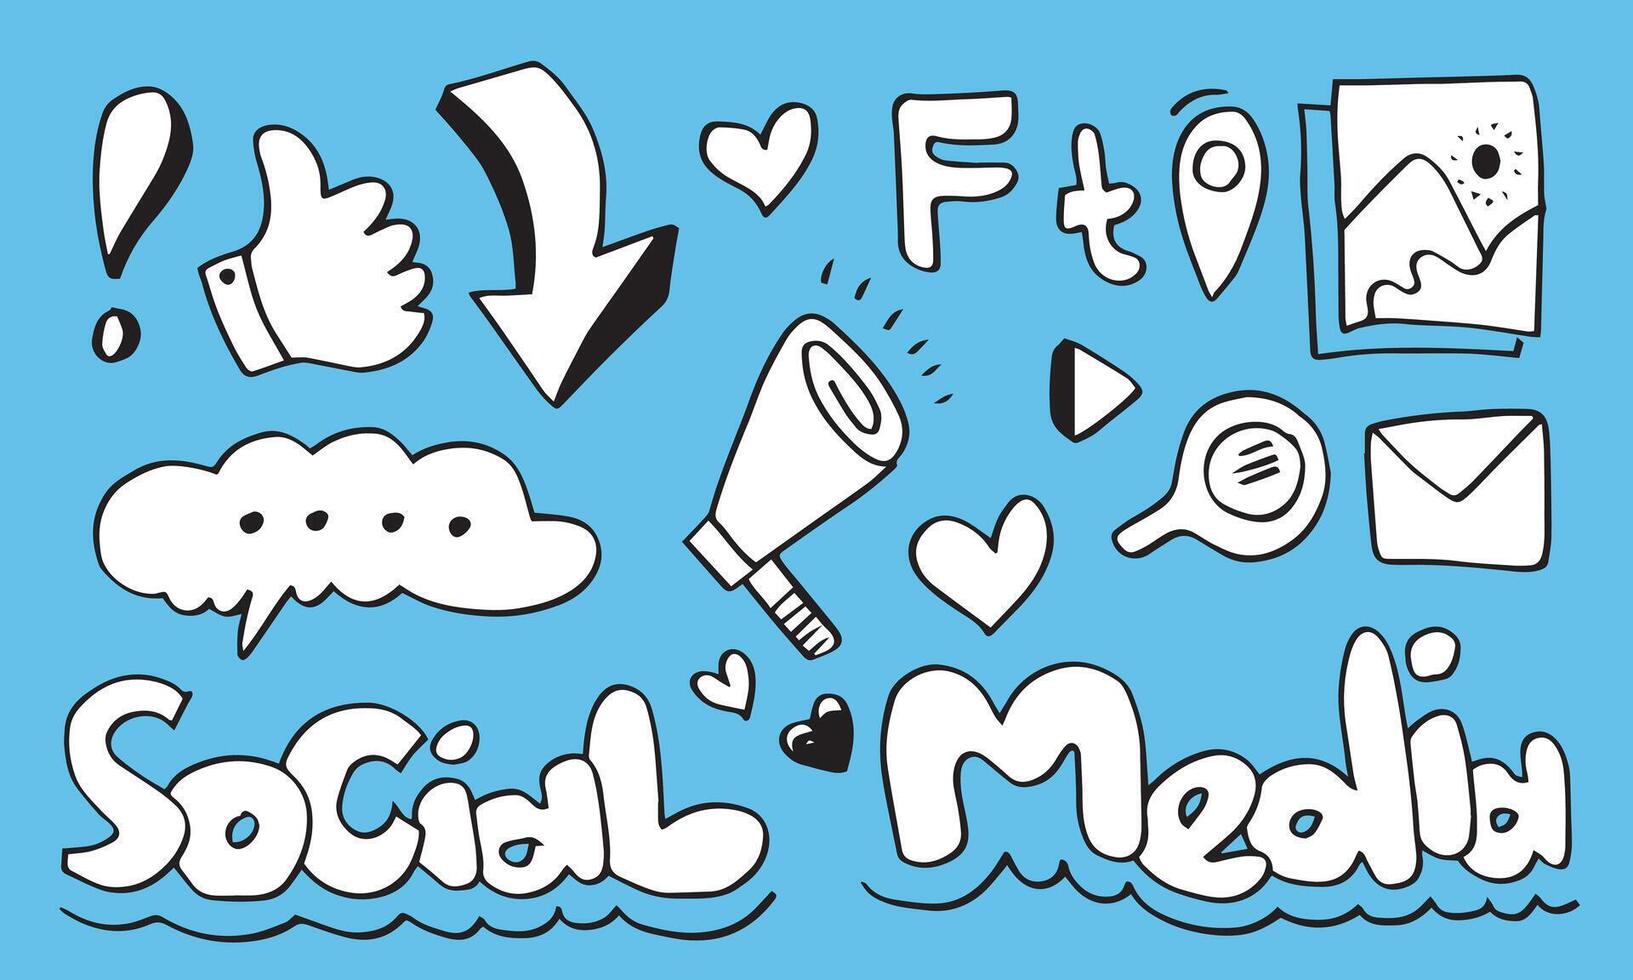 sociaal media concept met tekening stijl voor web plaats. vector illustratie.